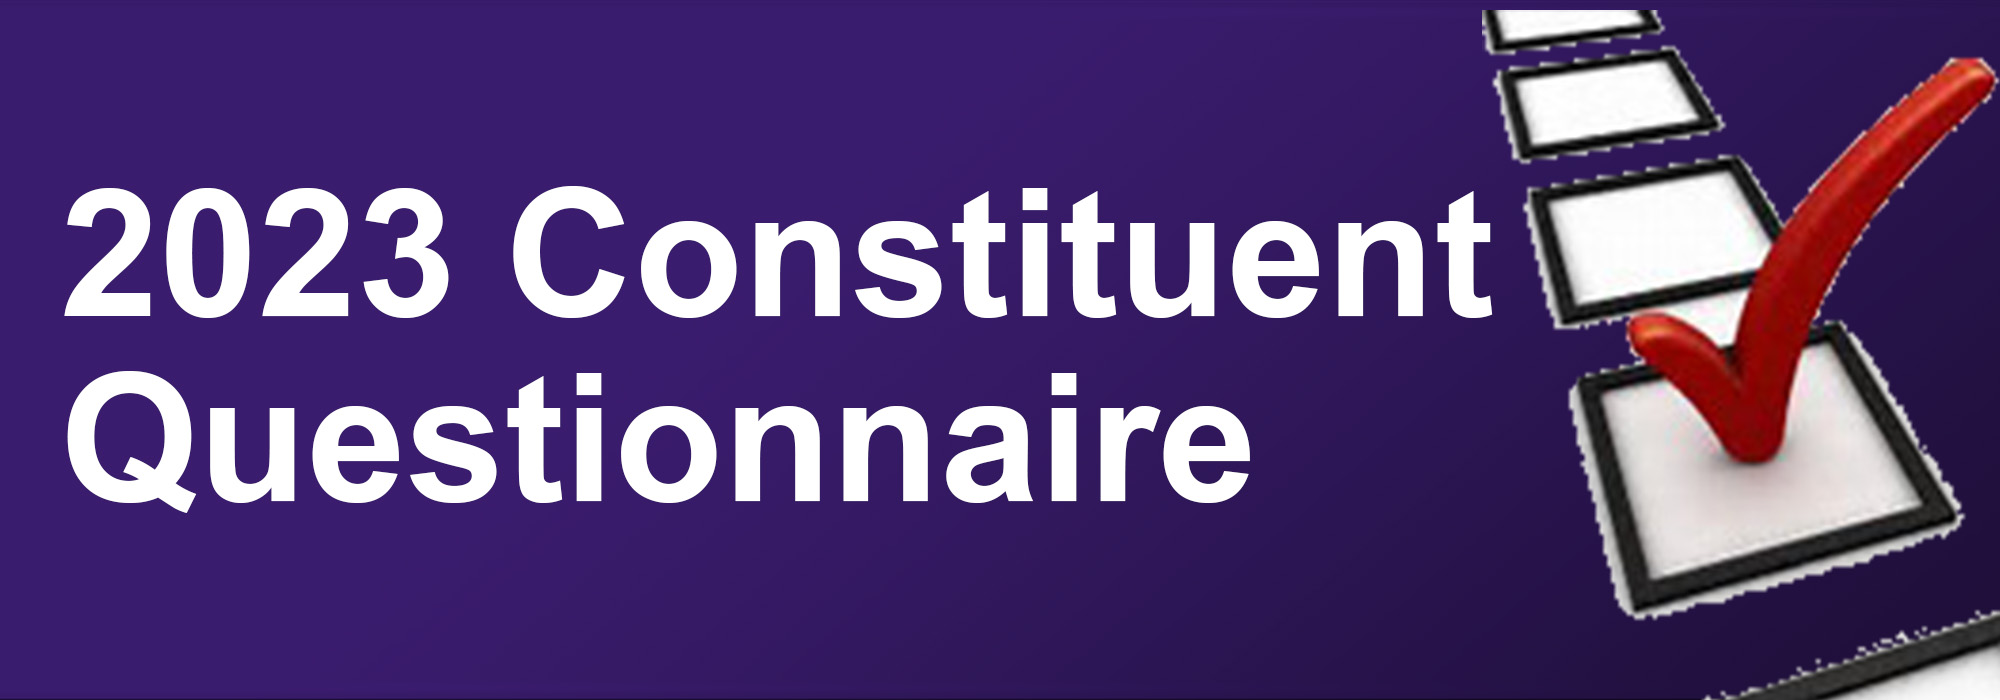 2023 Constituent Questionnaire